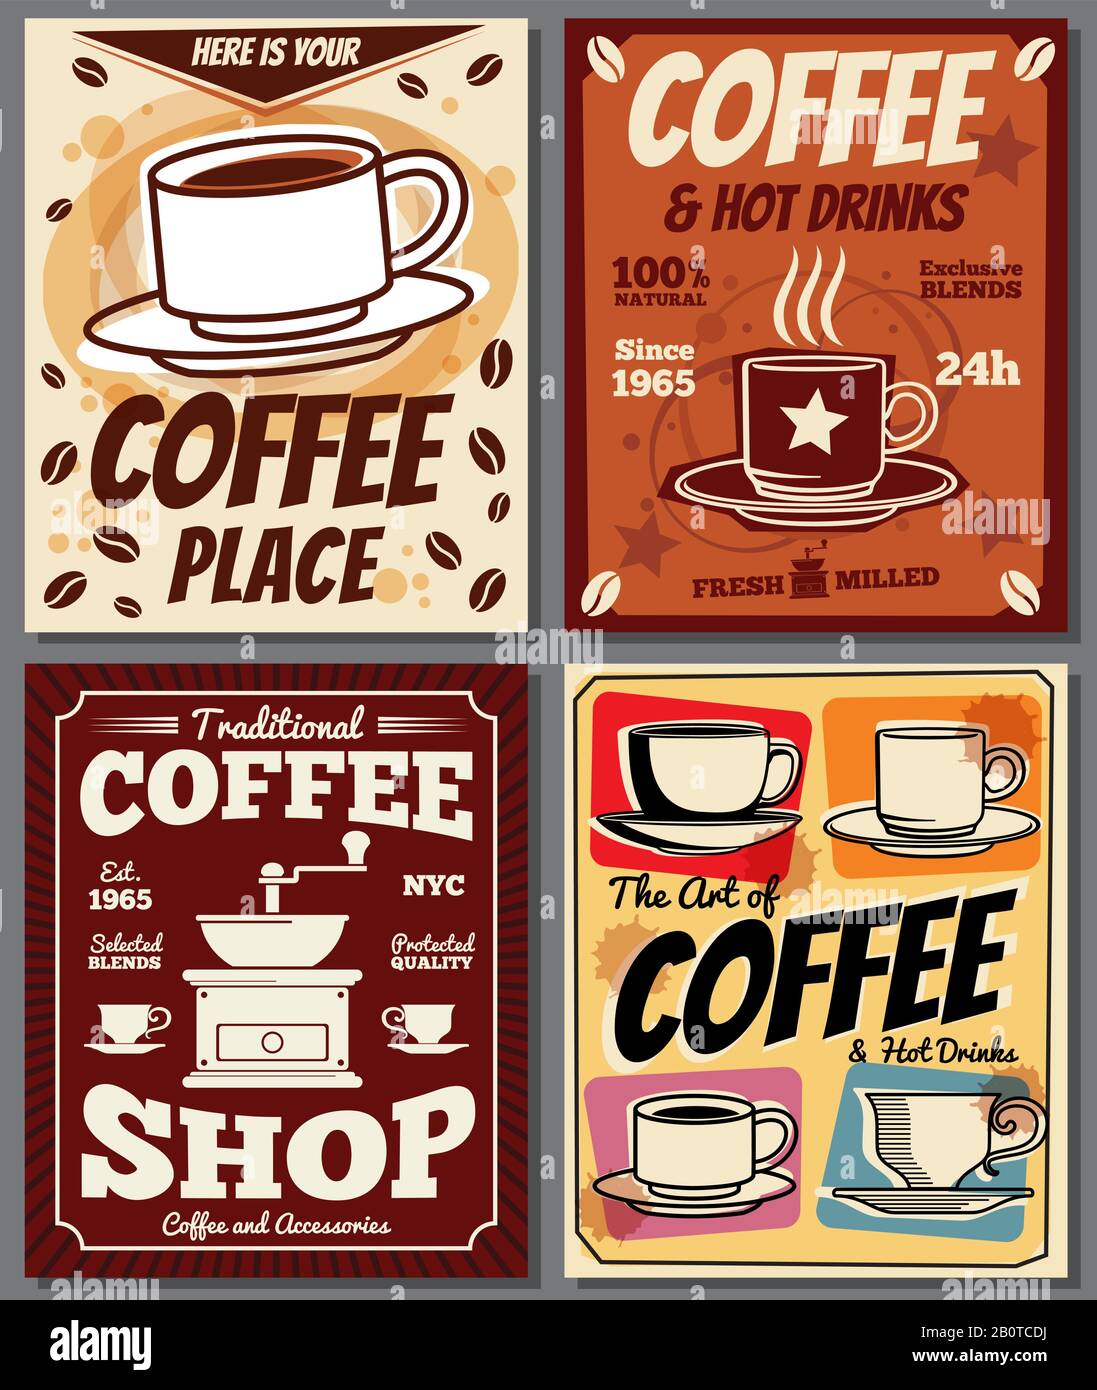 Café und Restaurant Retro Poster Vektorvorlagen mit Kaffeefleck. Banner-Menü im Coffeeshop, Abbildung des Kaffees in der Cafeteria des Vintage-Posters Stock Vektor